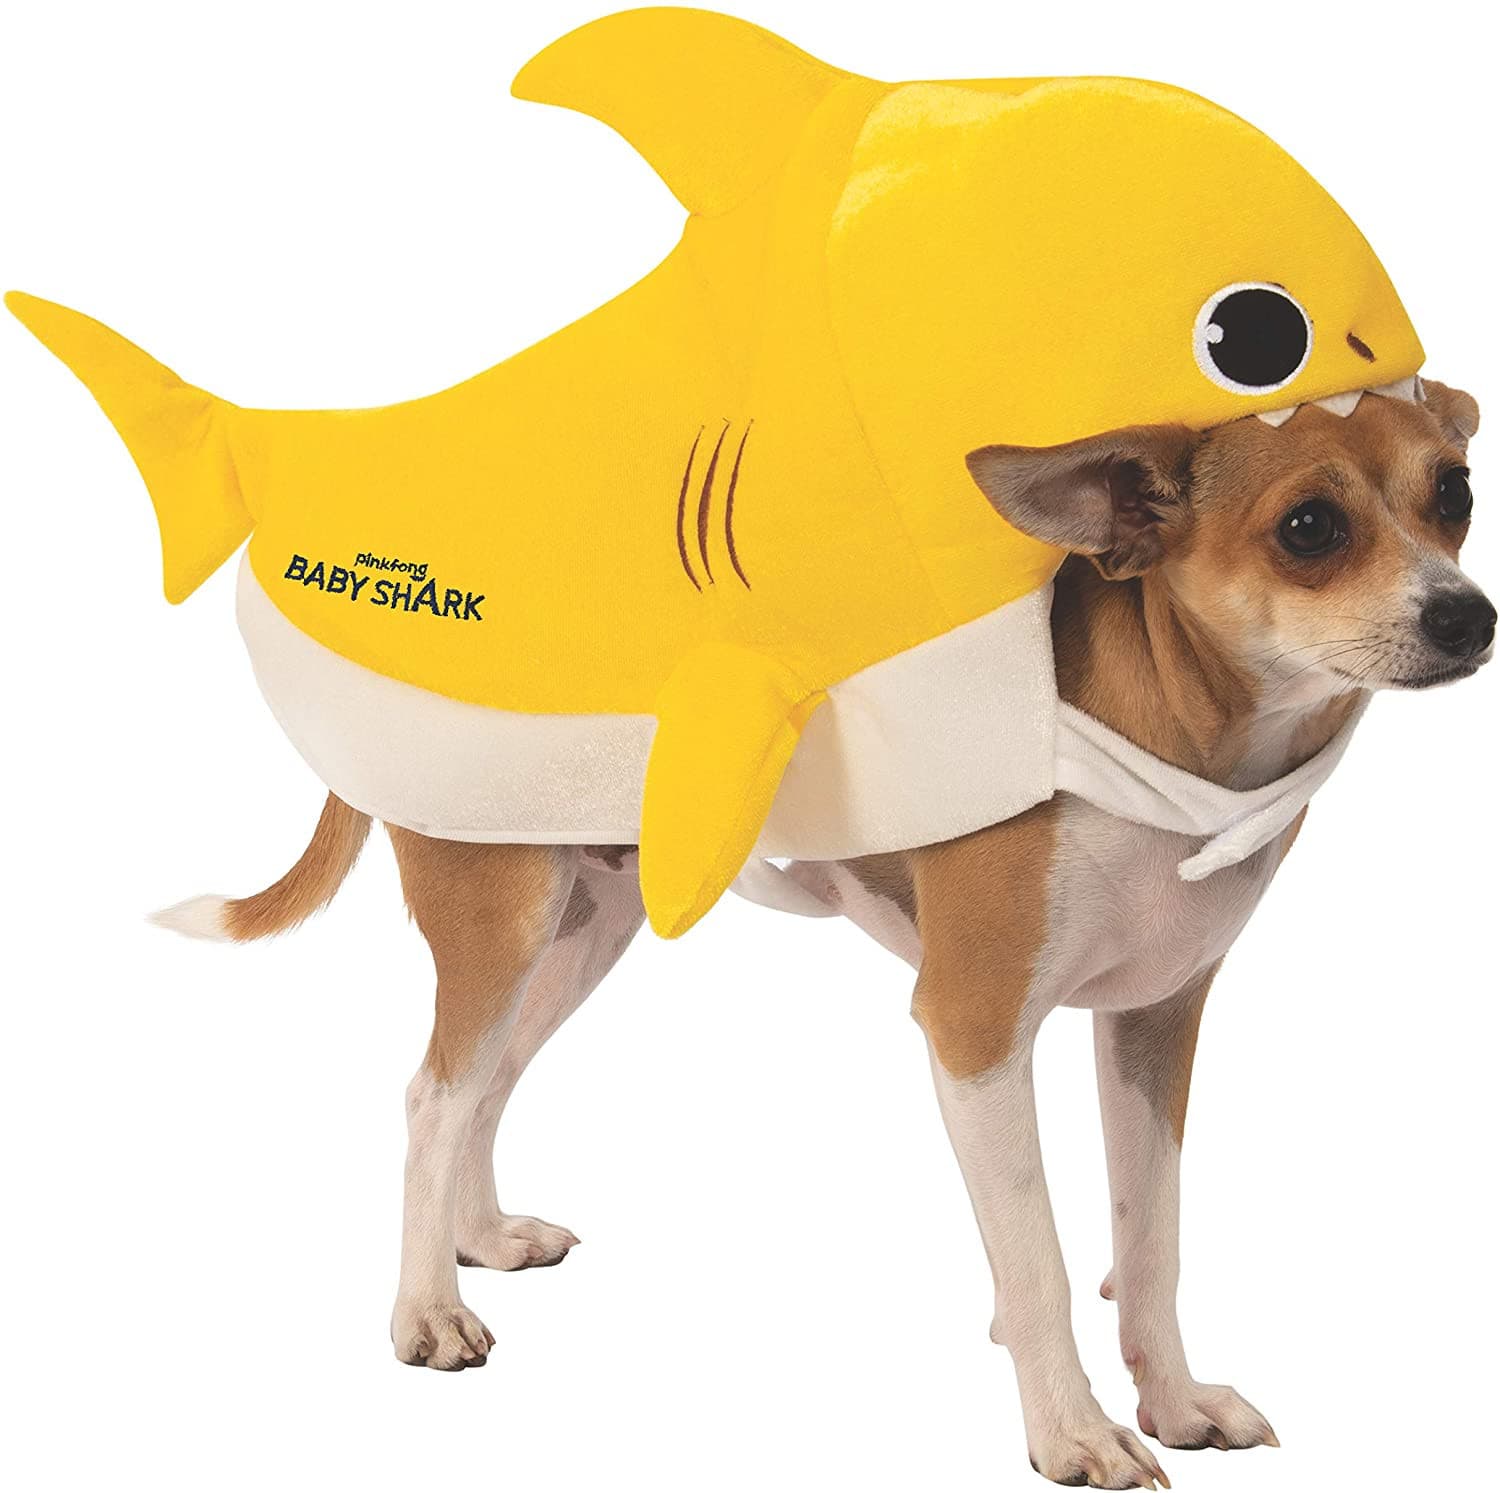 Baby Shark Pet Costume.